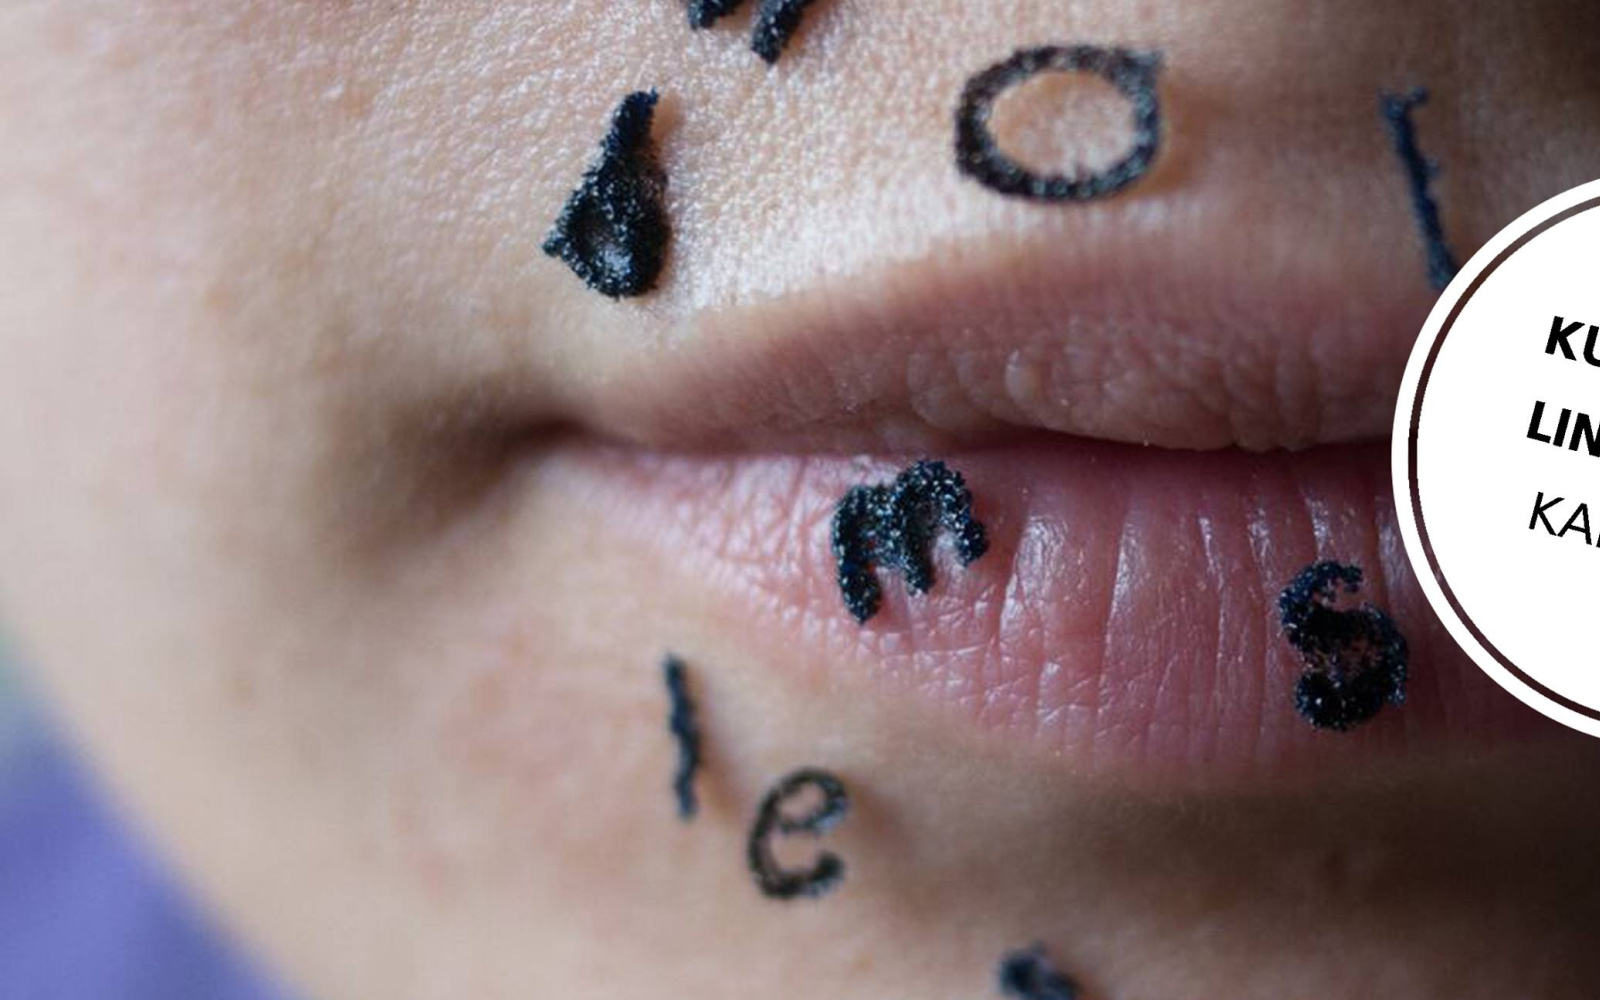 Nahaufnahme eines Mundes: Auf der Haut sind Buchstaben aufgemalt.